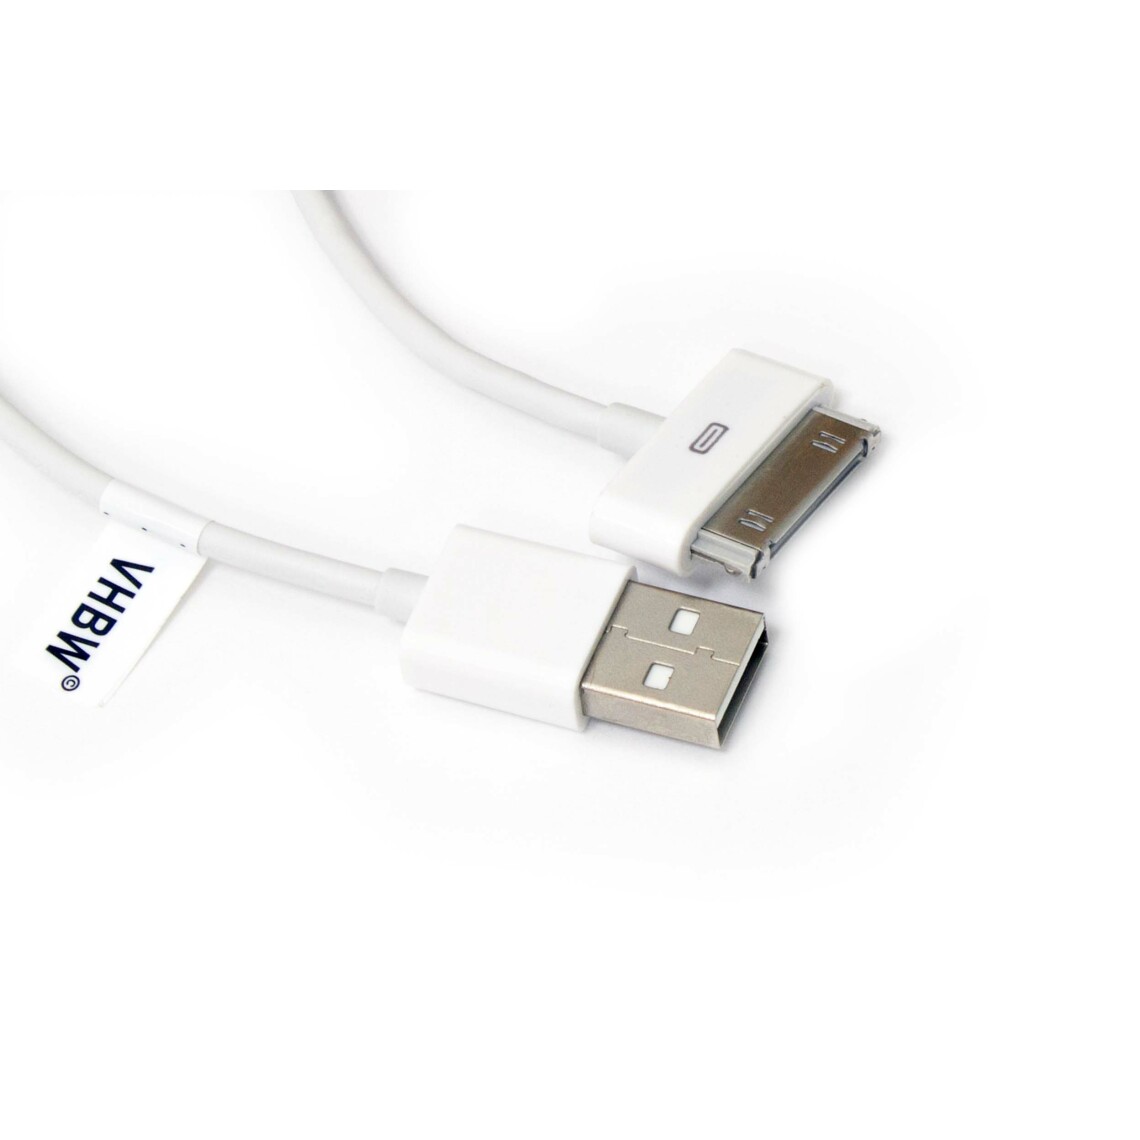 Vhbw - vhbw câble de données USB (type A sur iPod) compatible avec Apple iPod nano 1 Gen. - A1137, nano 2 Gen. - A1199 lecteur MP3 - blanc - Alimentation modulaire